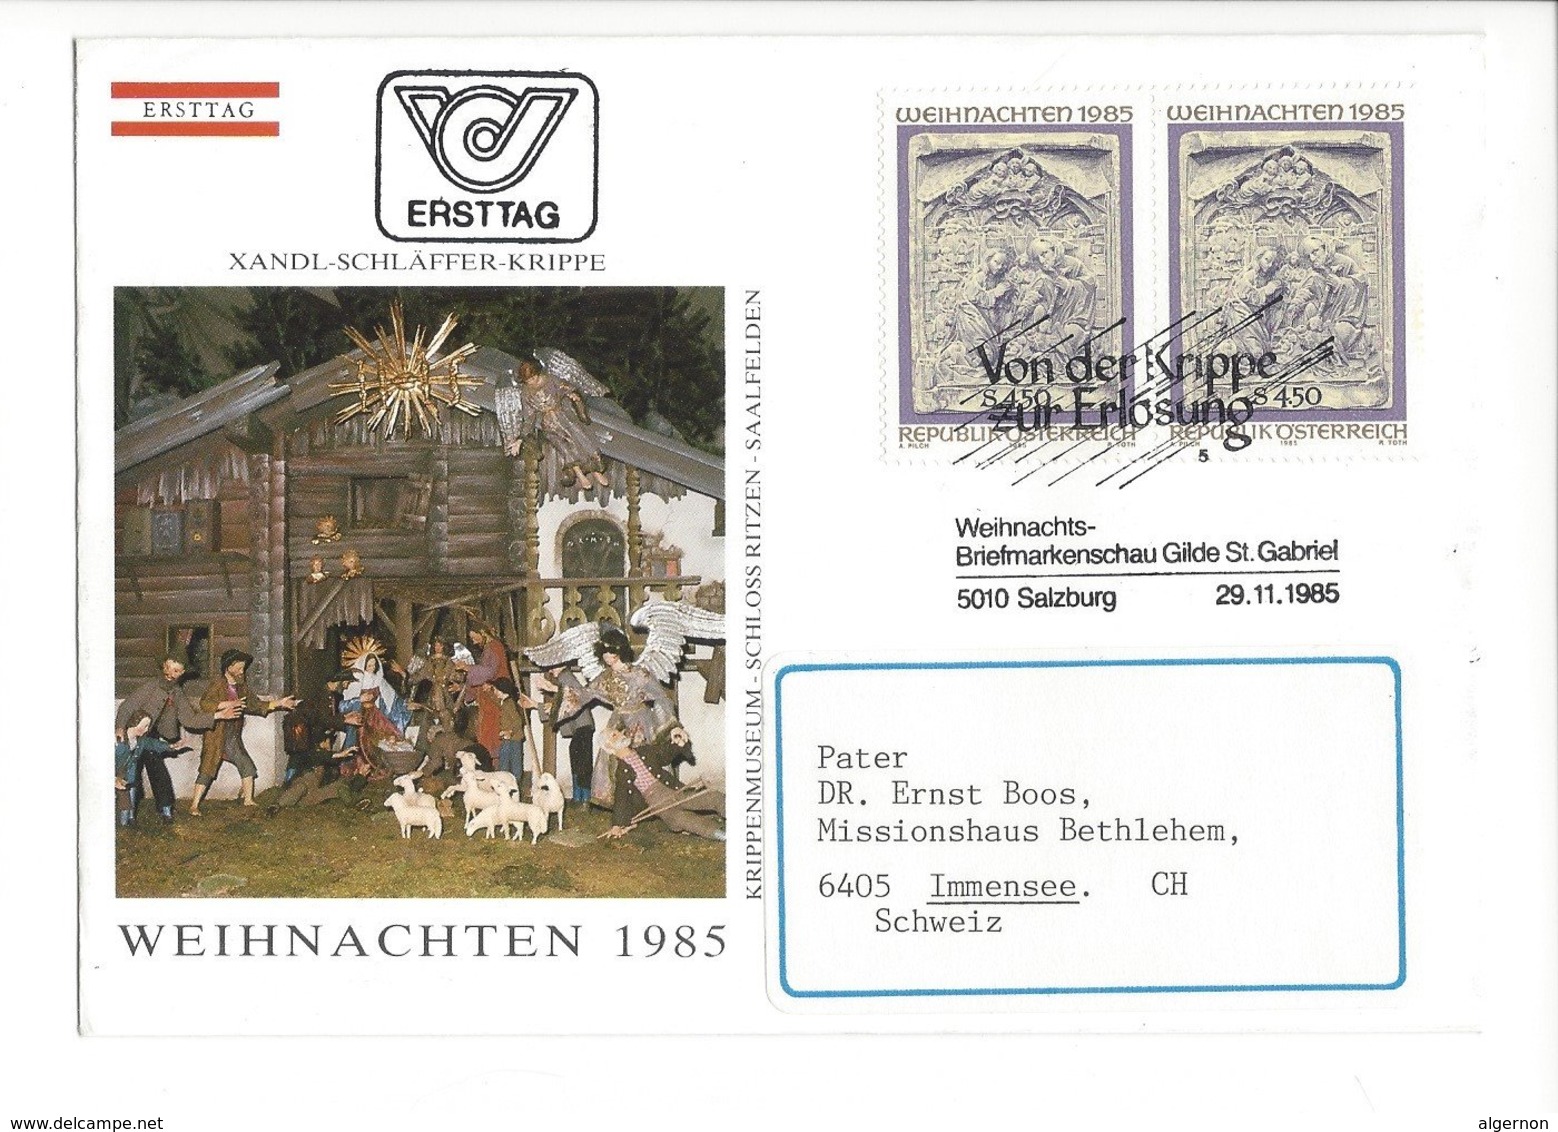 22411 - Christkindl 1985 Pour Immensee 29.11.1985 + Cachet Von Der Krippe Zur Erlosung - Noël